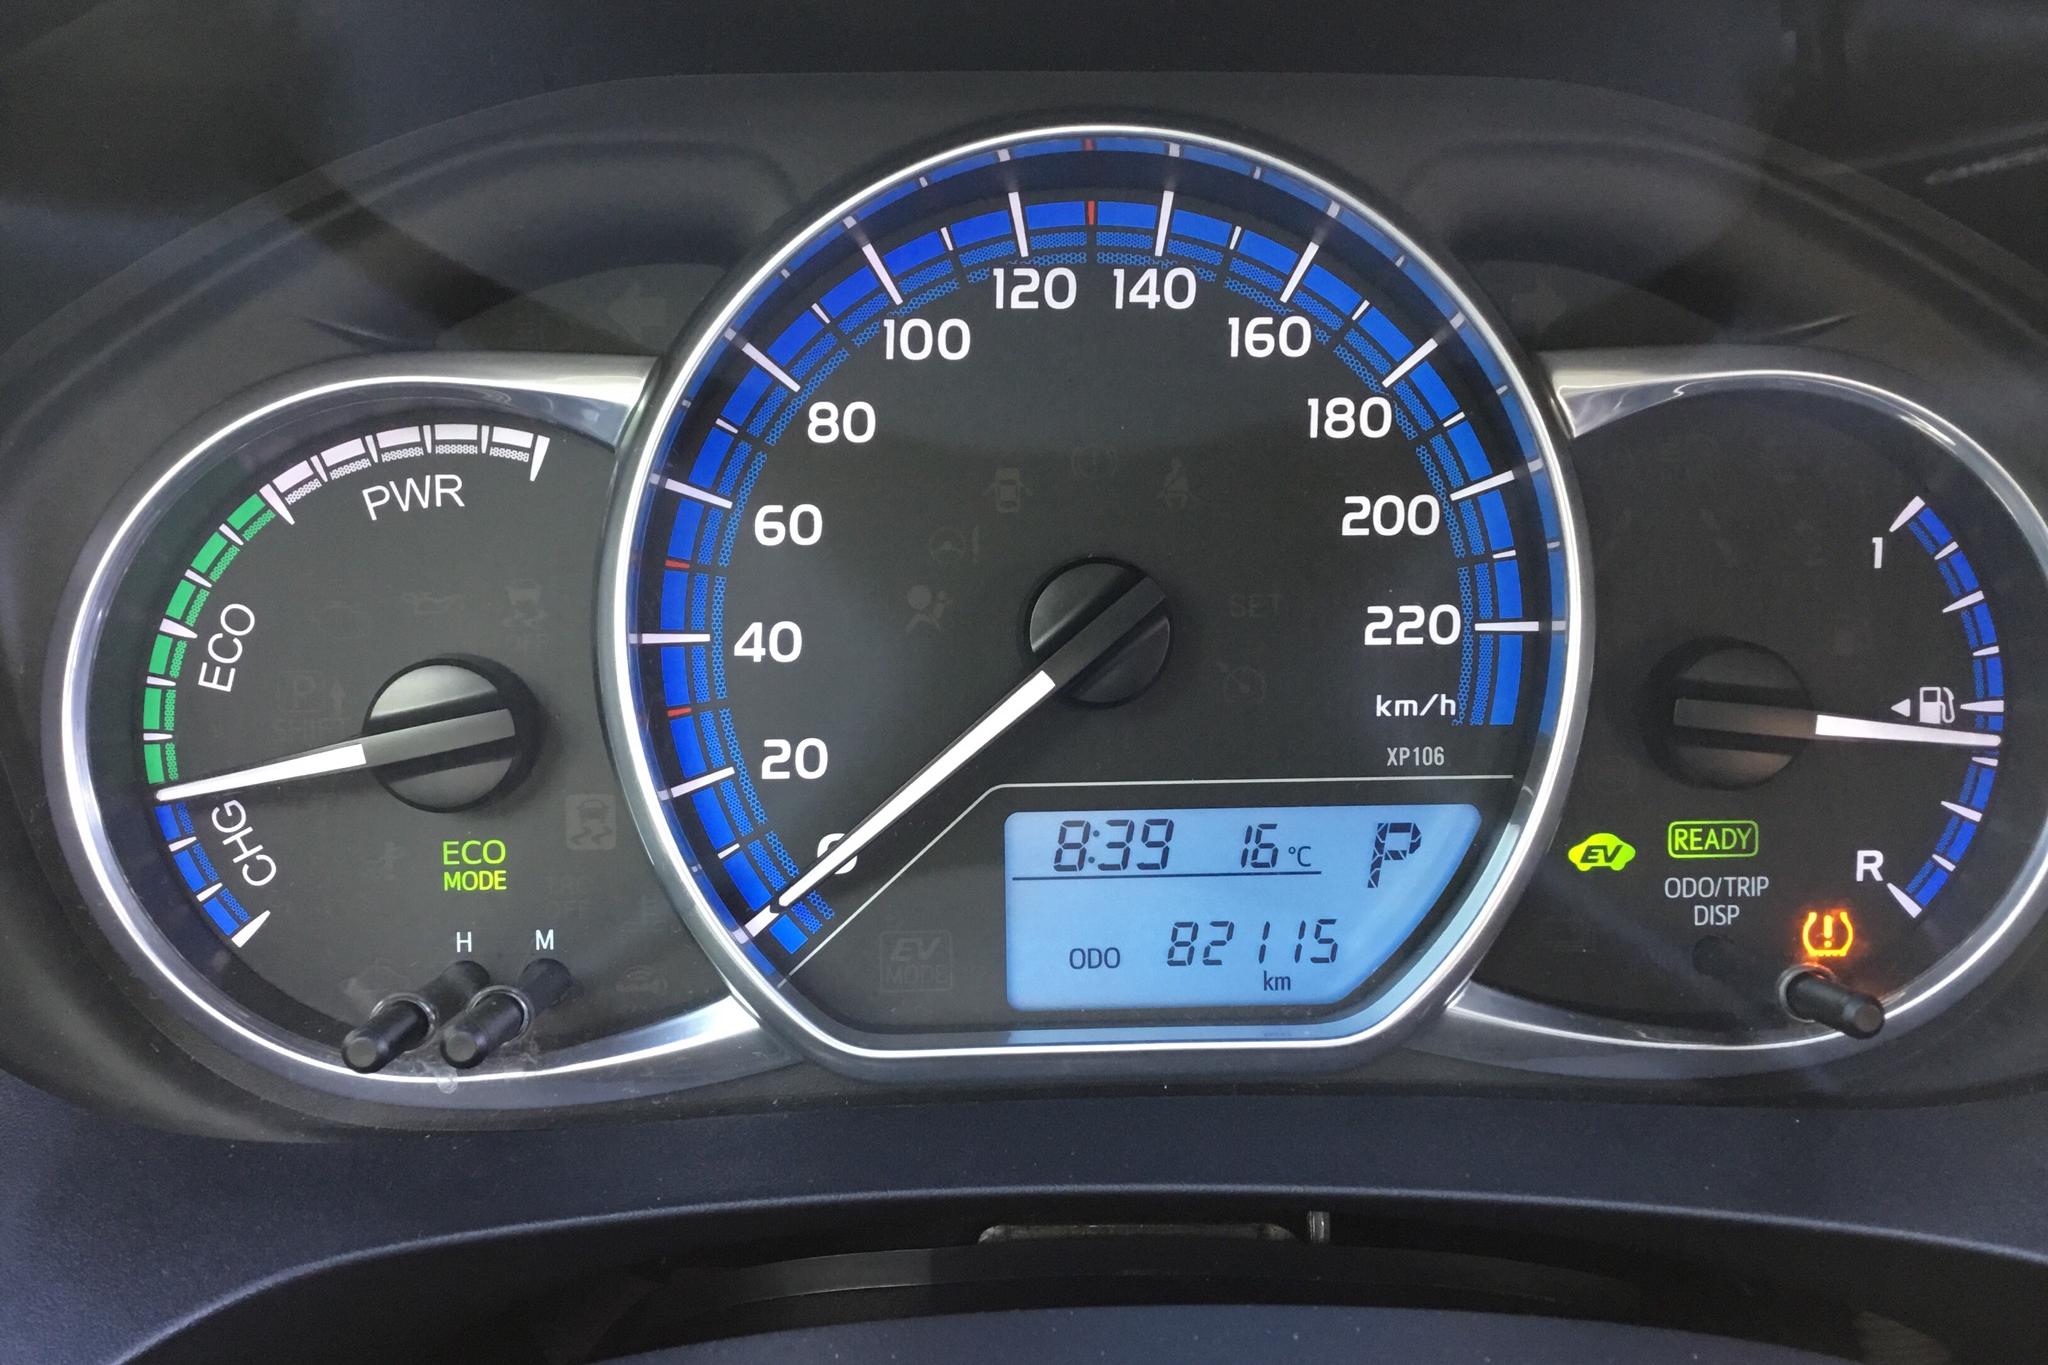 Toyota Yaris 1.5 HSD 5dr (75hk) - 82 110 km - Automatyczna - czerwony - 2016